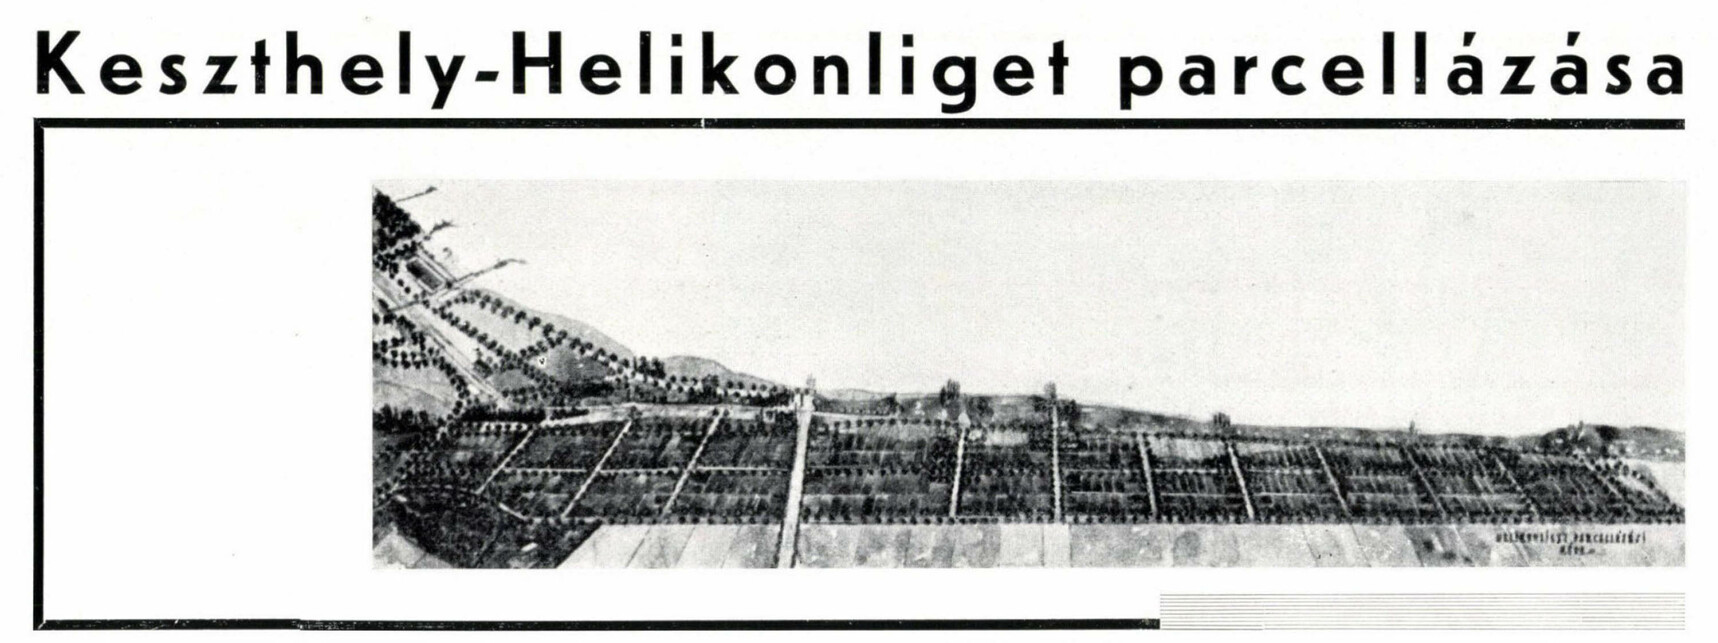 Helikonliget, 1935. Forrás: Tér és Forma 8 (1935) 3.
